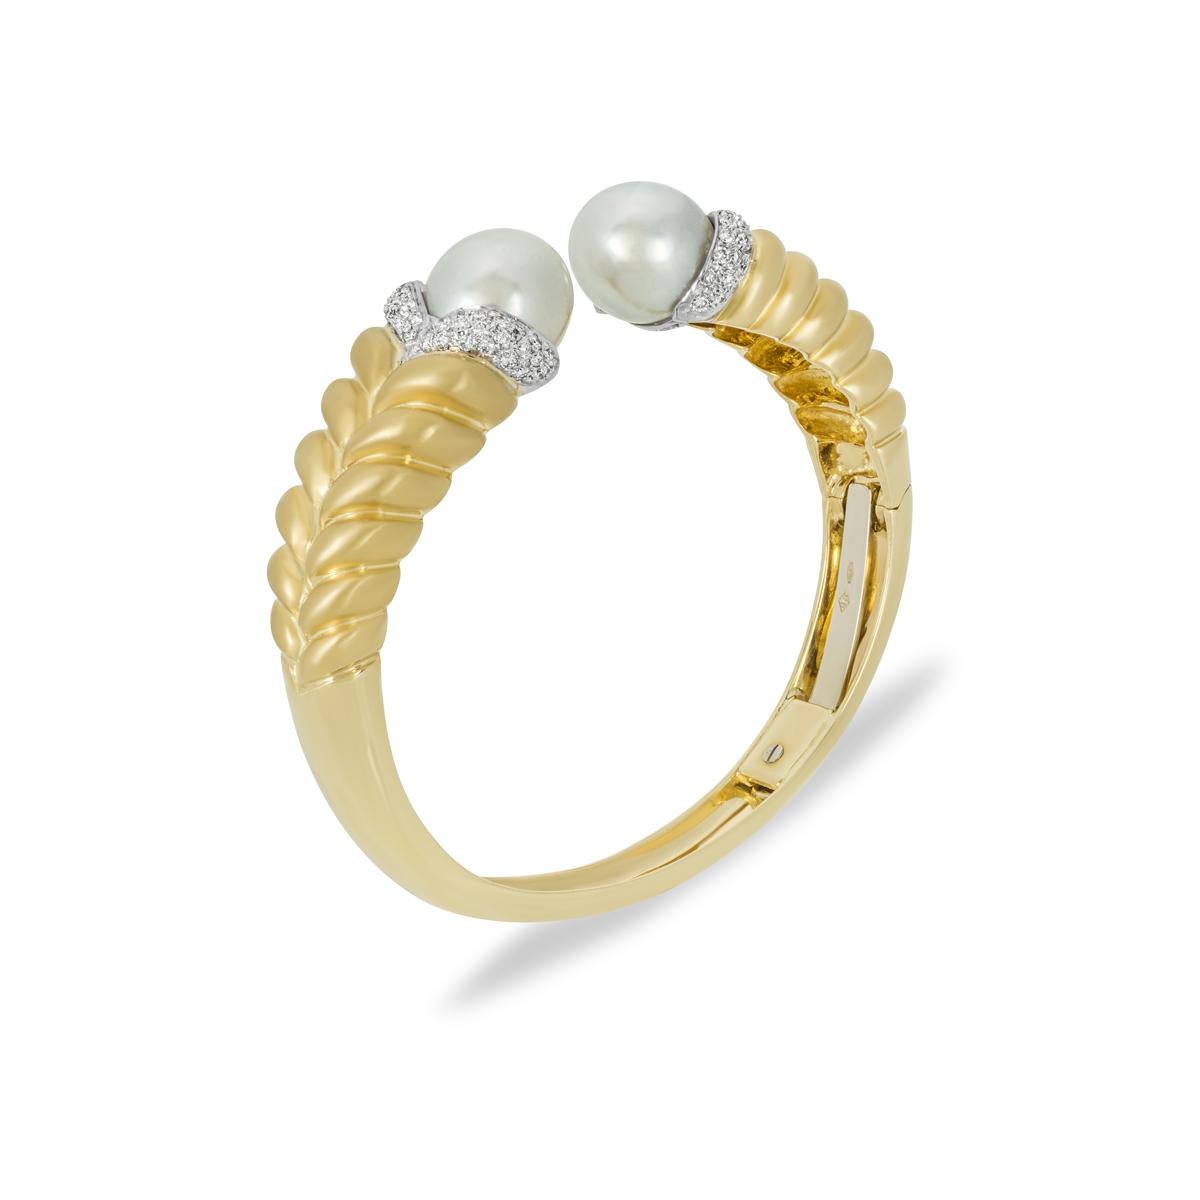 Eine schlichte Armspange aus 18 Karat Gelbgold mit Perlen und Diamanten. Zwei weiße Perlen schmücken die 12 mm breiten Endstücke, die mit eingefassten Diamanten akzentuiert sind. Die 84 runden Diamanten im Brillantschliff haben ein ungefähres